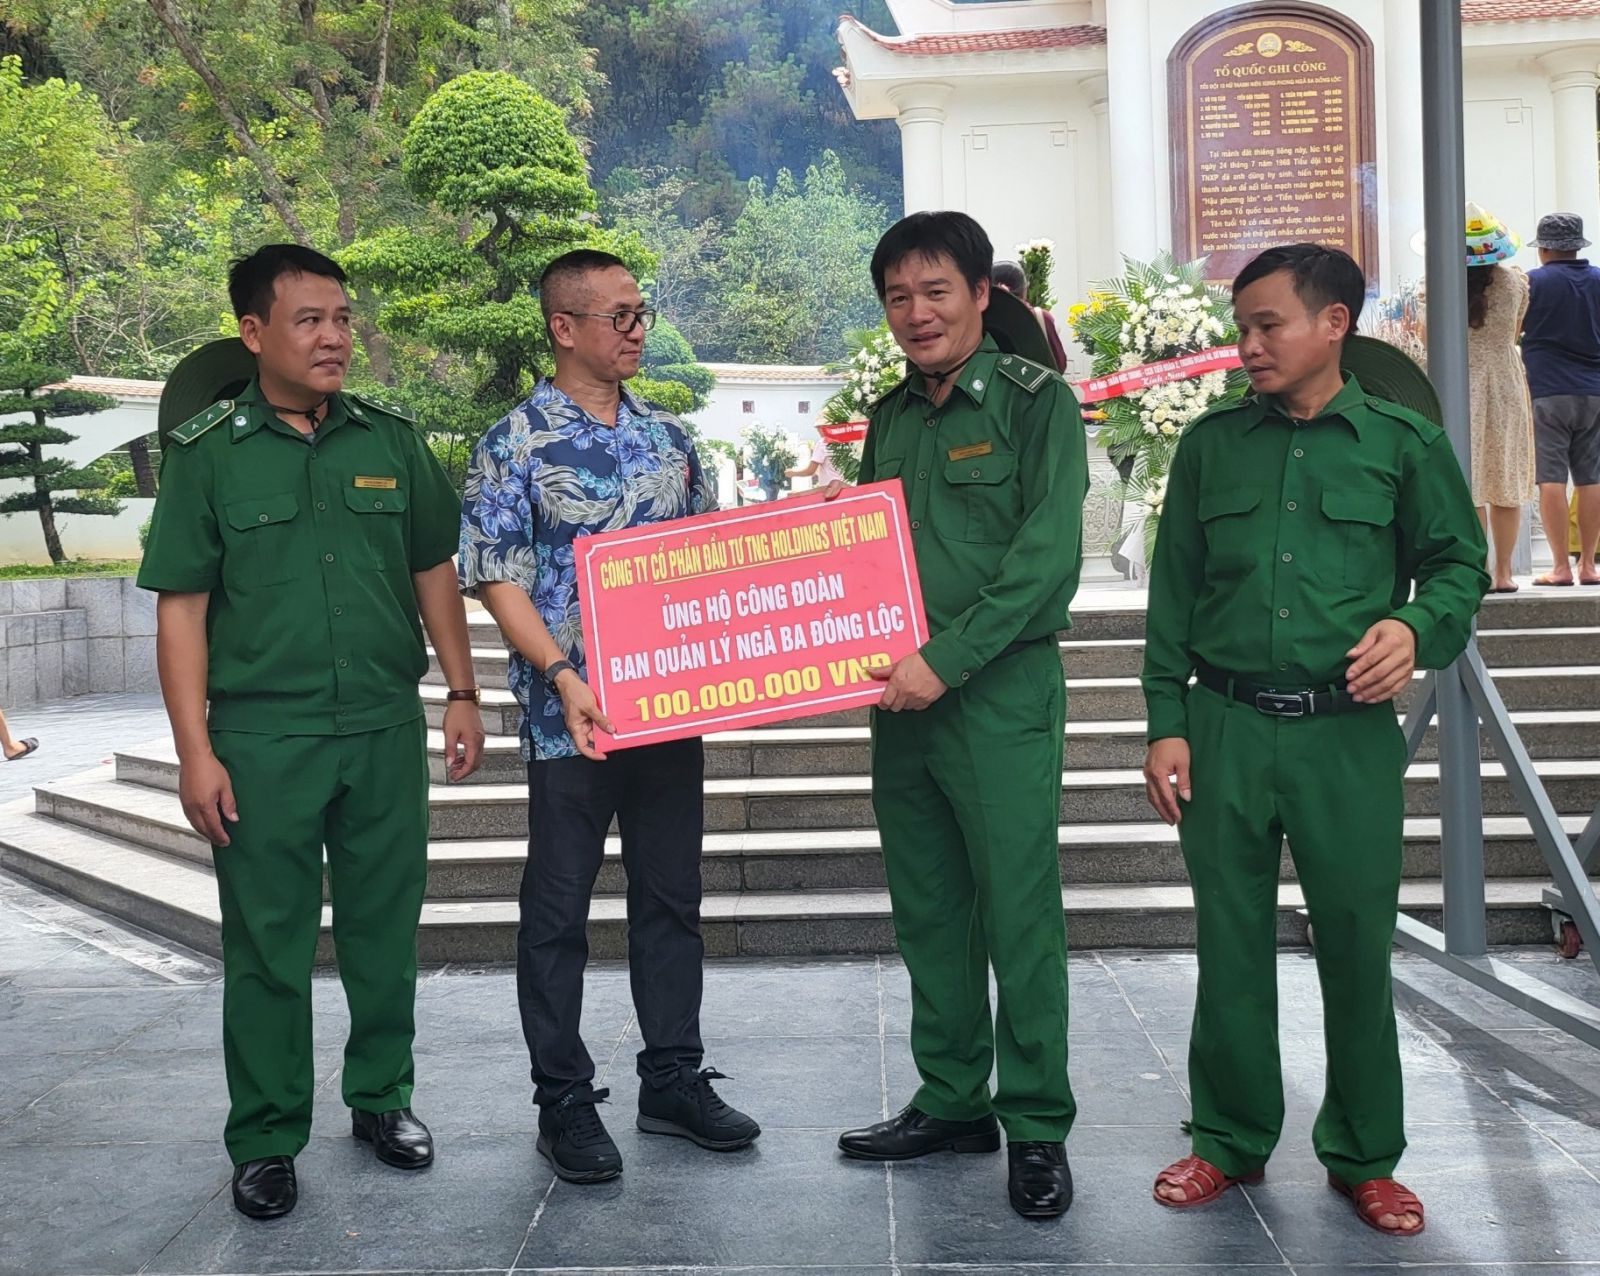 Đại diện Tập đoàn ủng hộ Ban quản lý Khu mộ 10 nữ Anh hùng liệt sĩ Thanh niên xung phong tại Ngã ba Đồng Lộc (Can Lộc, Hà Tĩnh) số tiền 100 triệu đồng. 